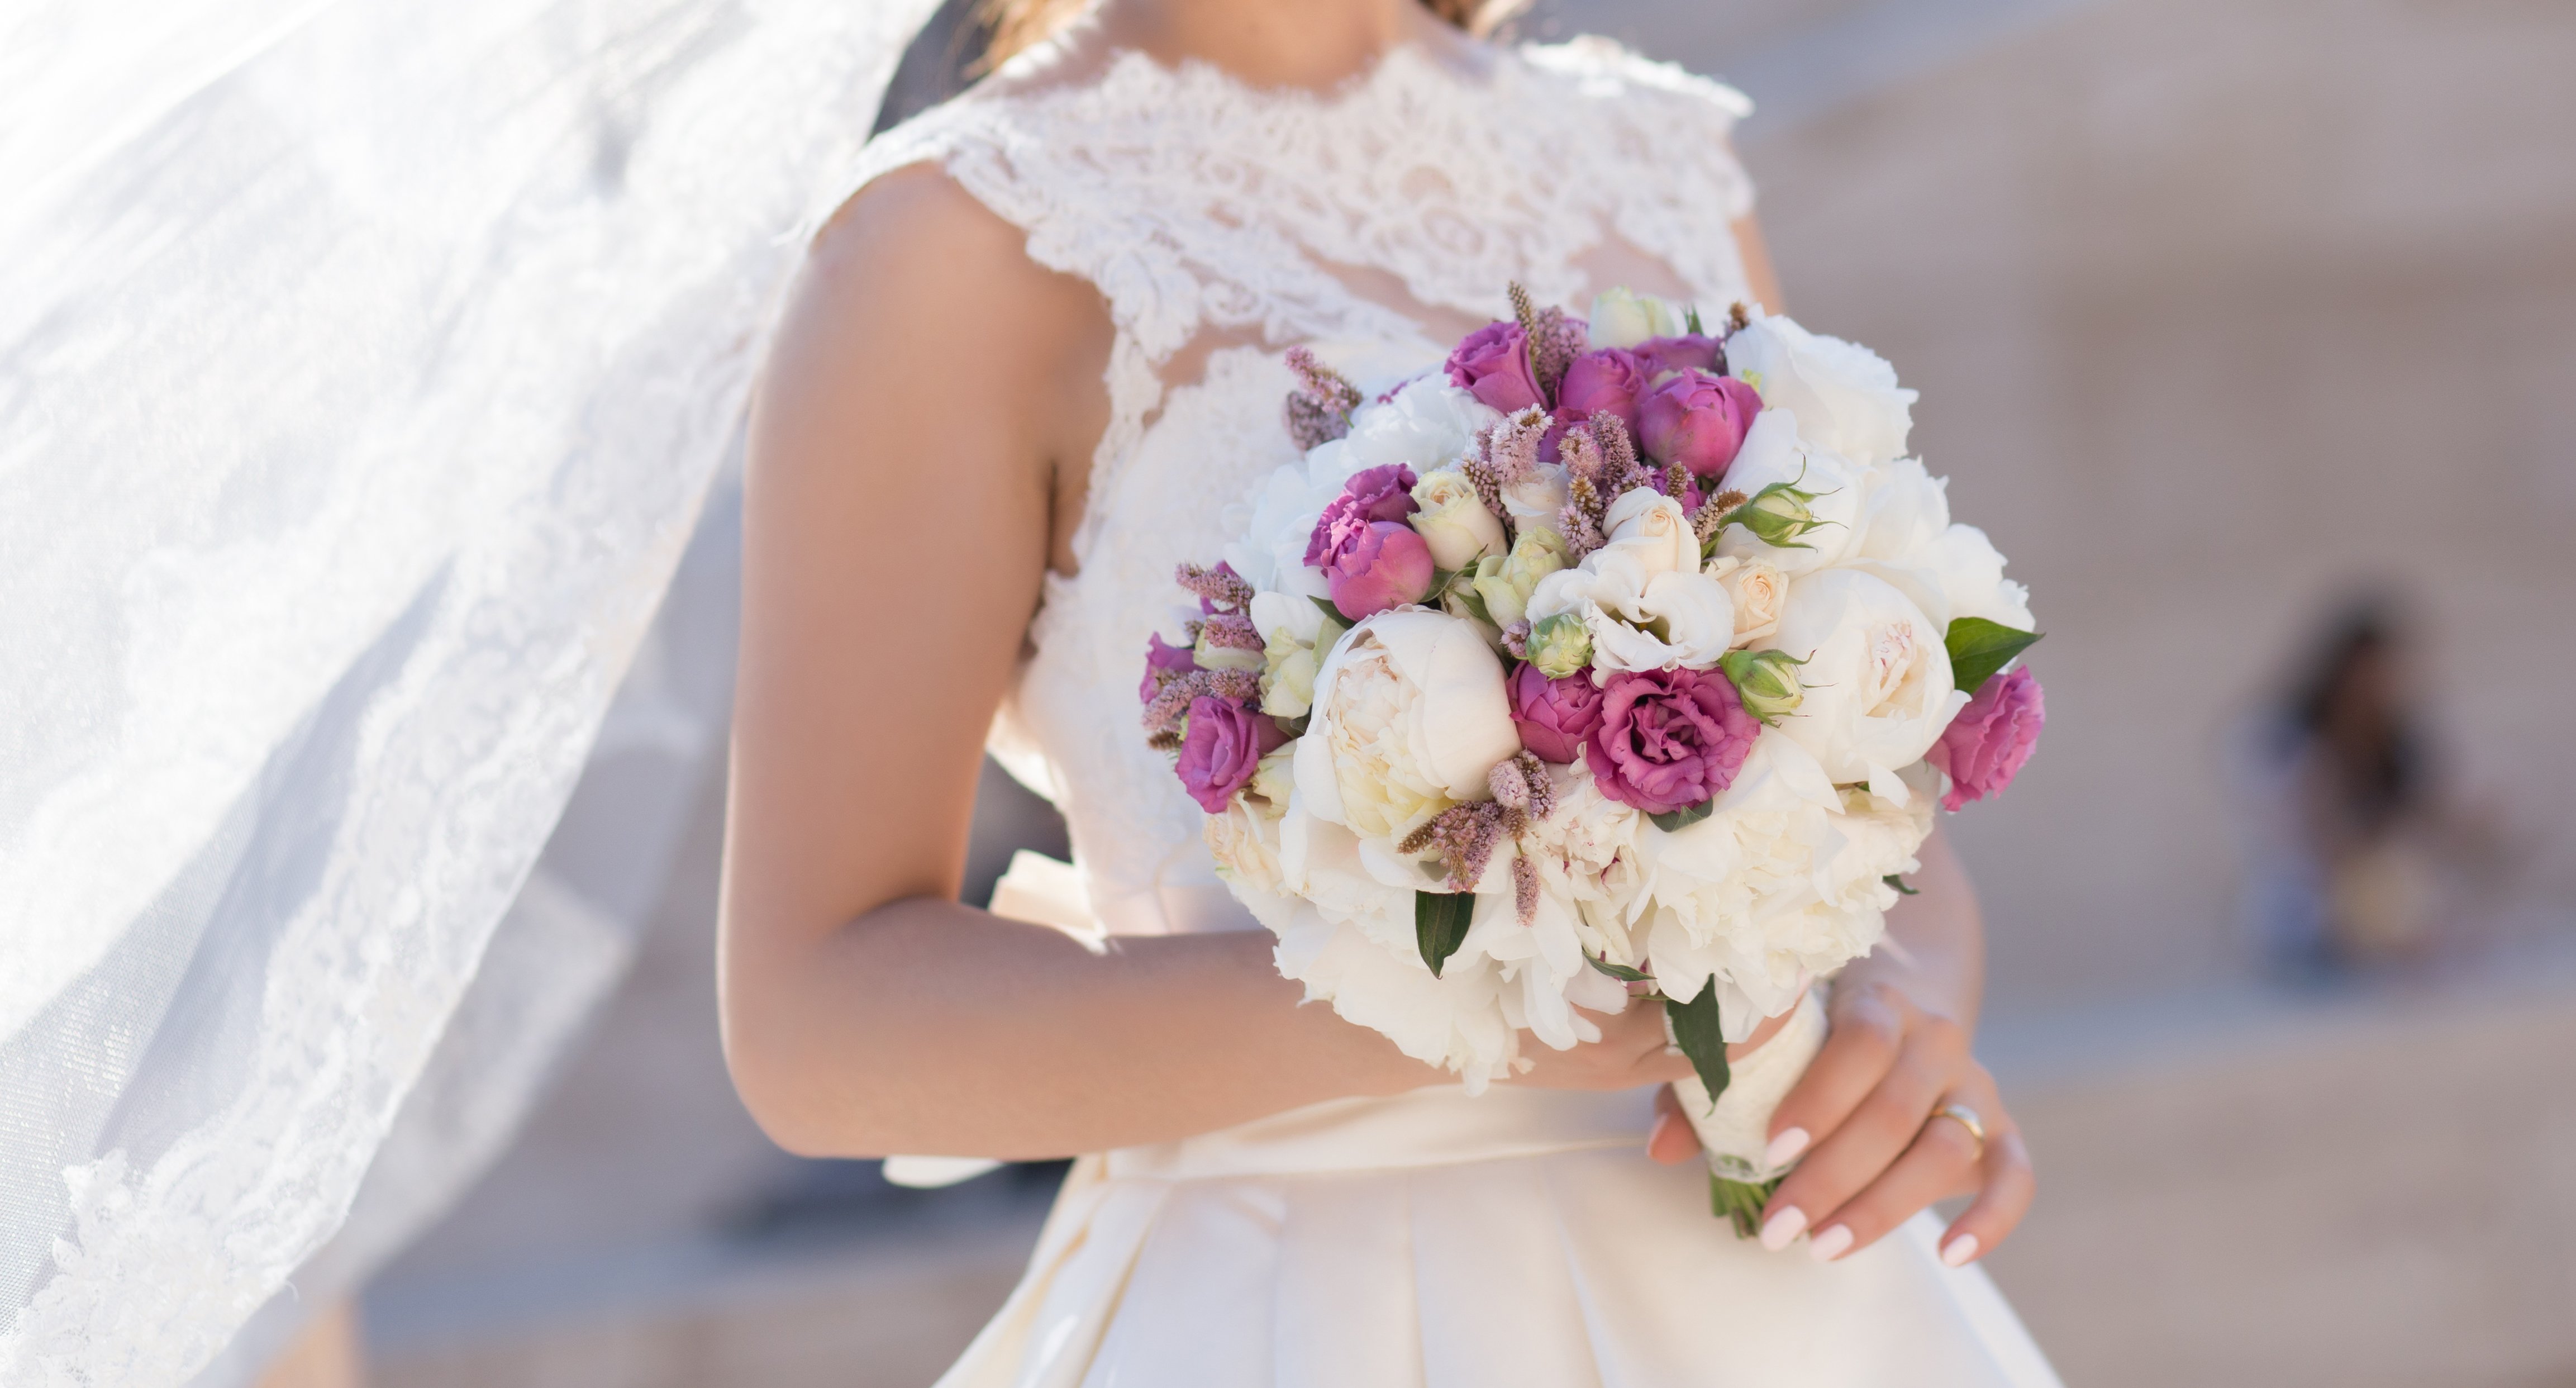 Braut mit Blumenstrauß | Quelle: Shutterstock